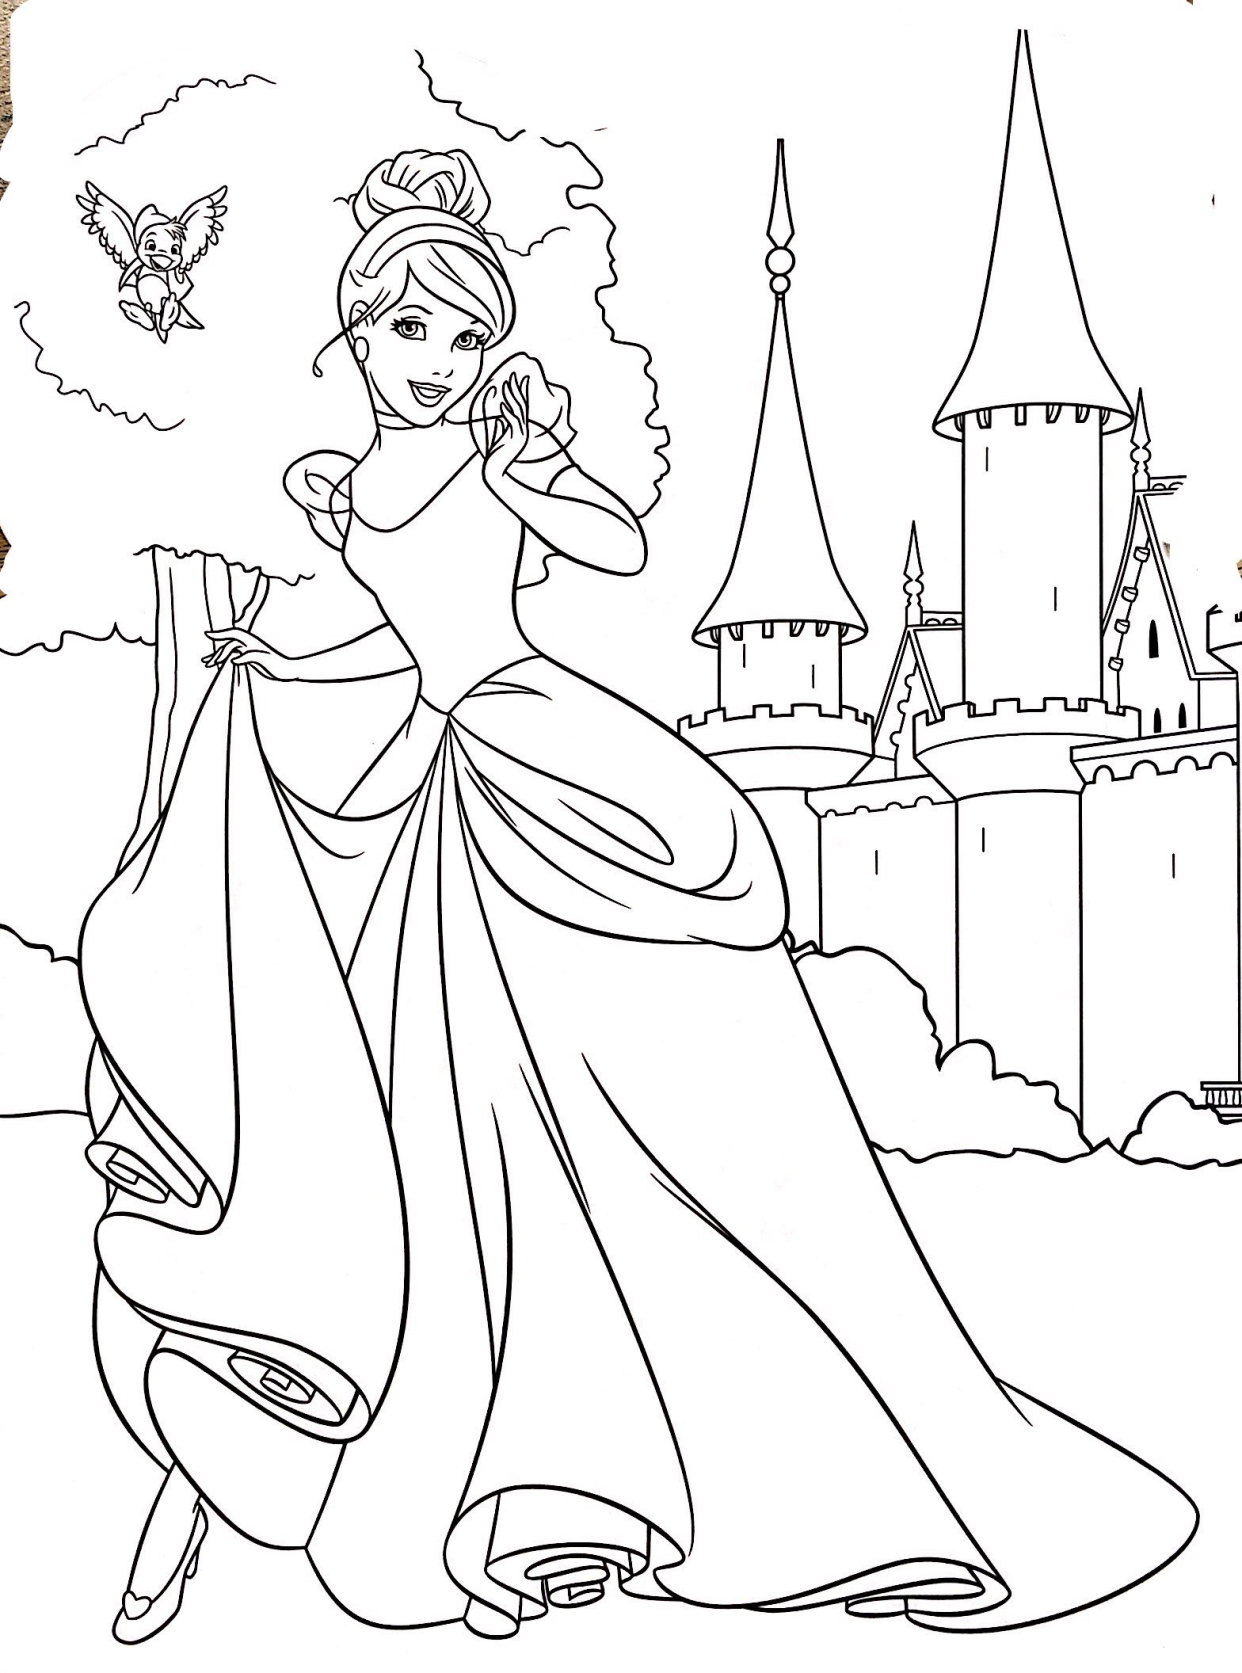 迪士尼公主手绘全身图片